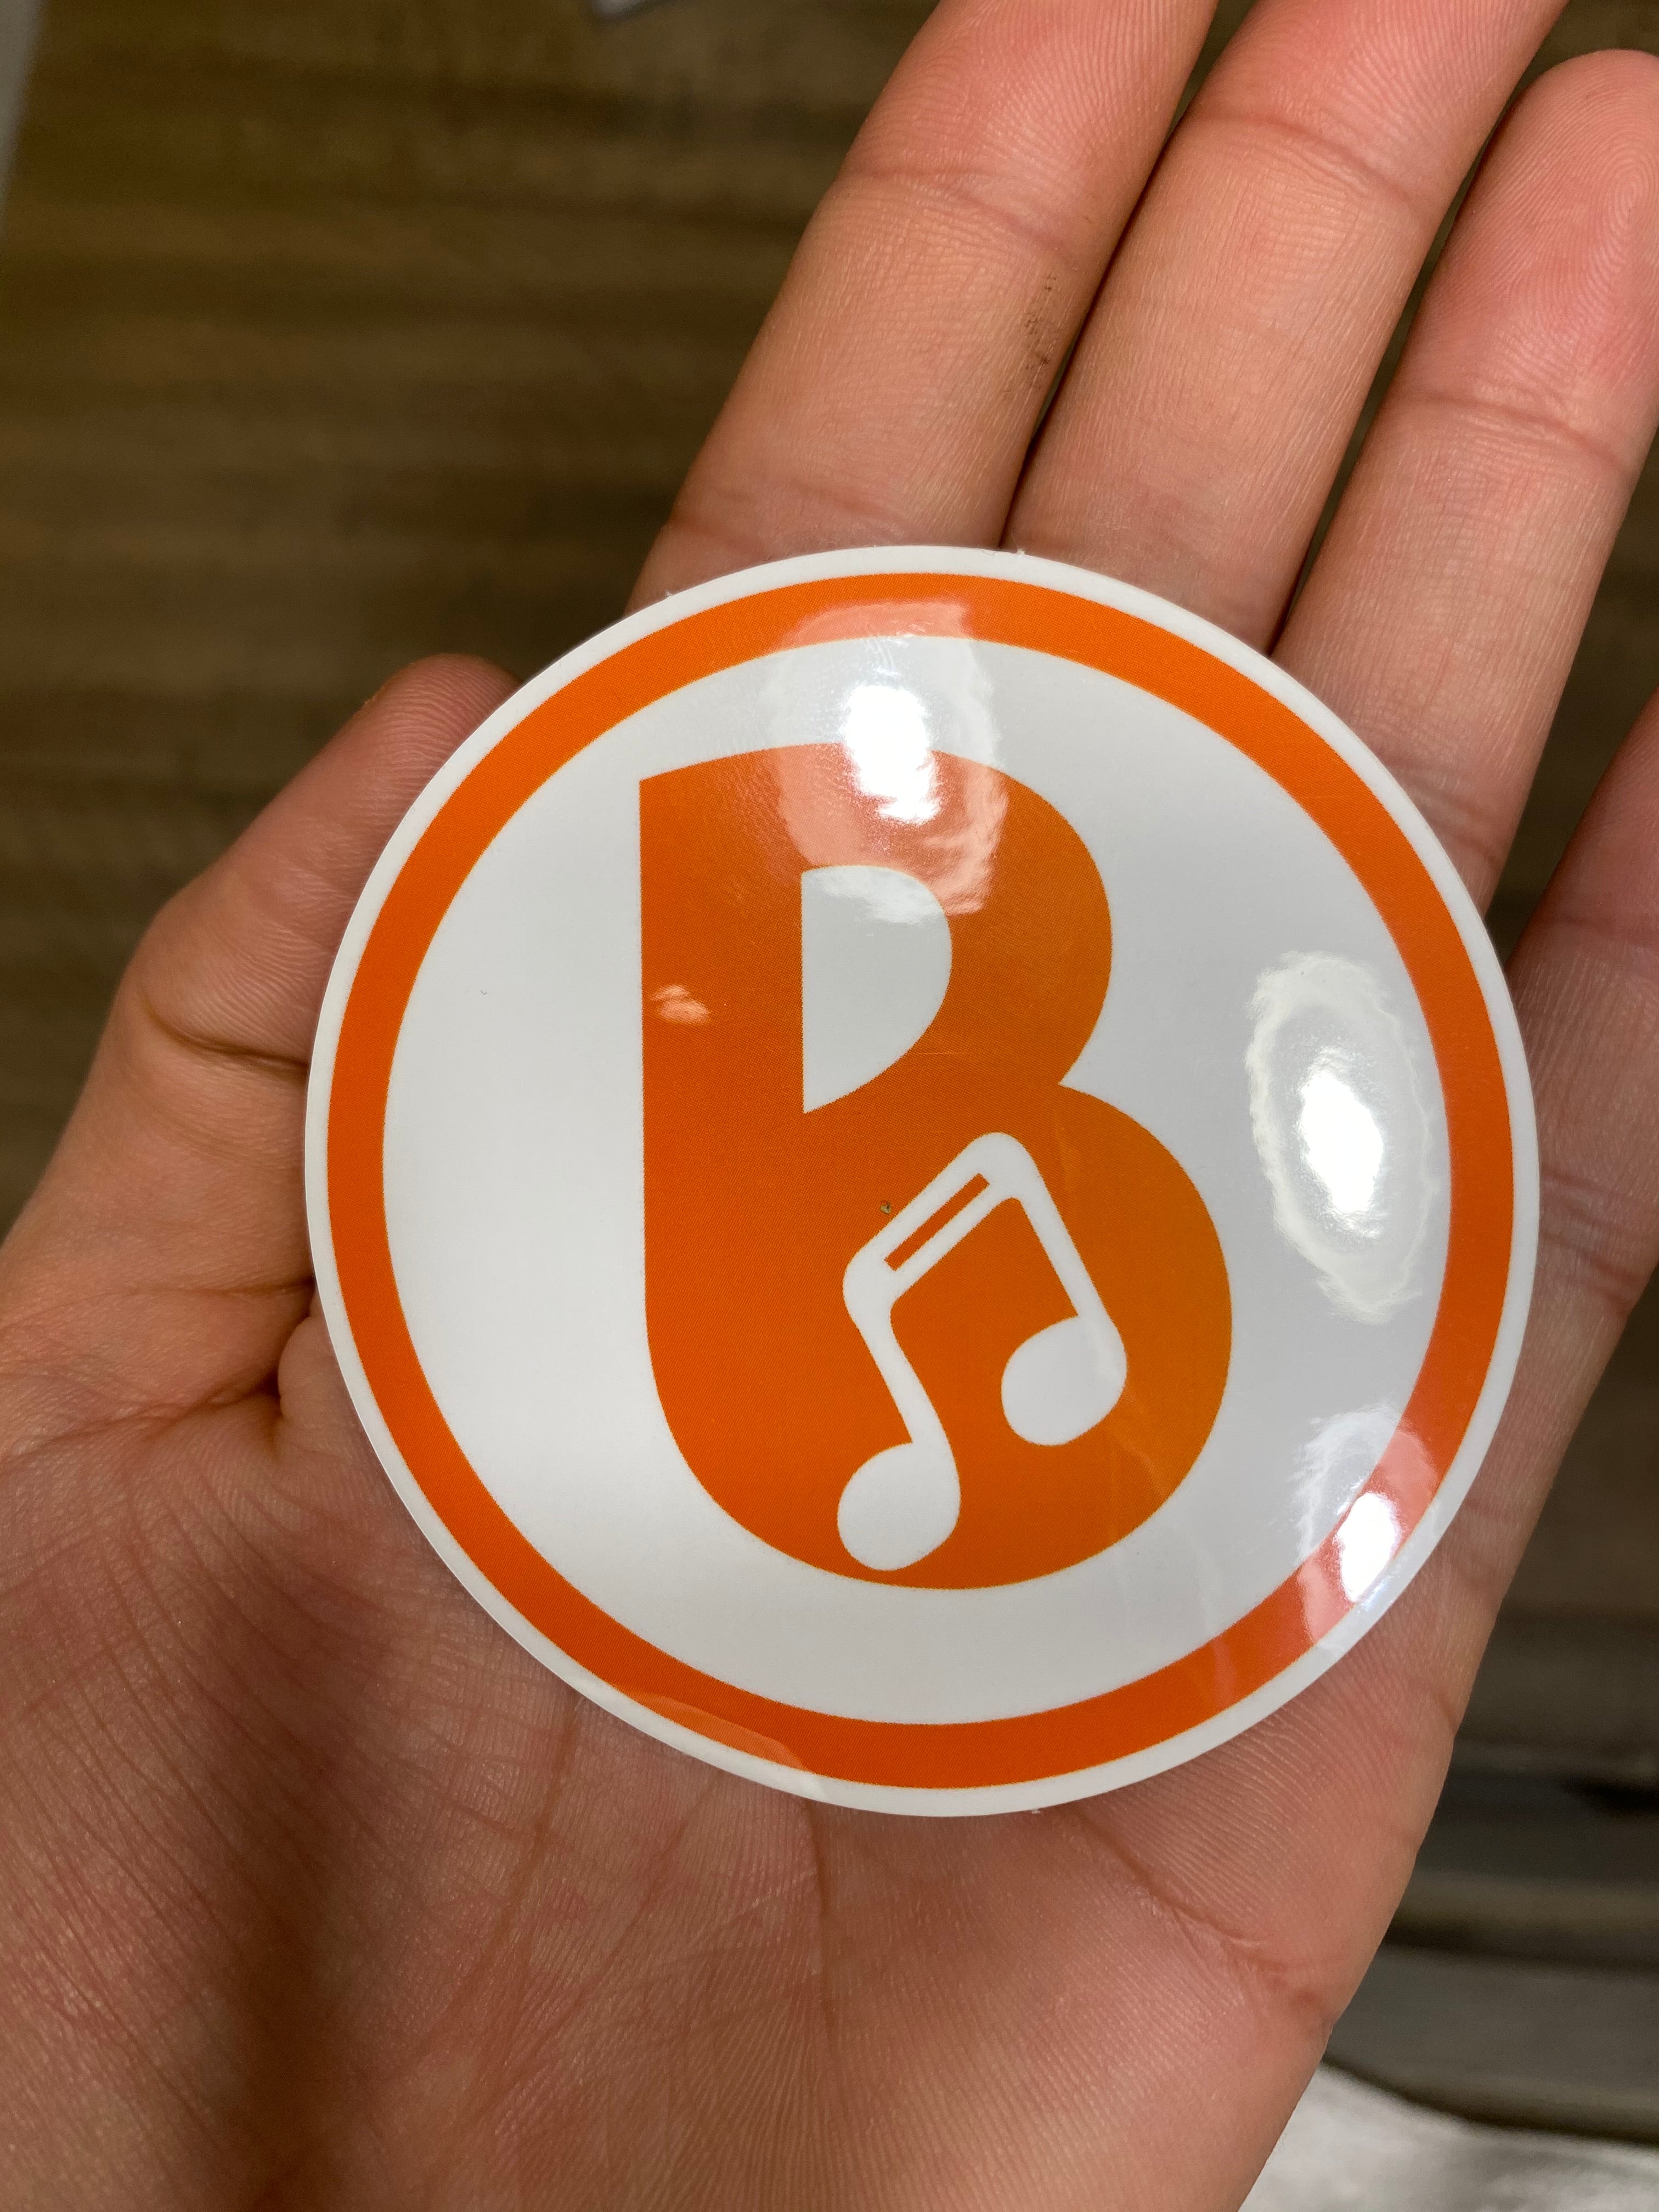 Banski 'B' logo sticker